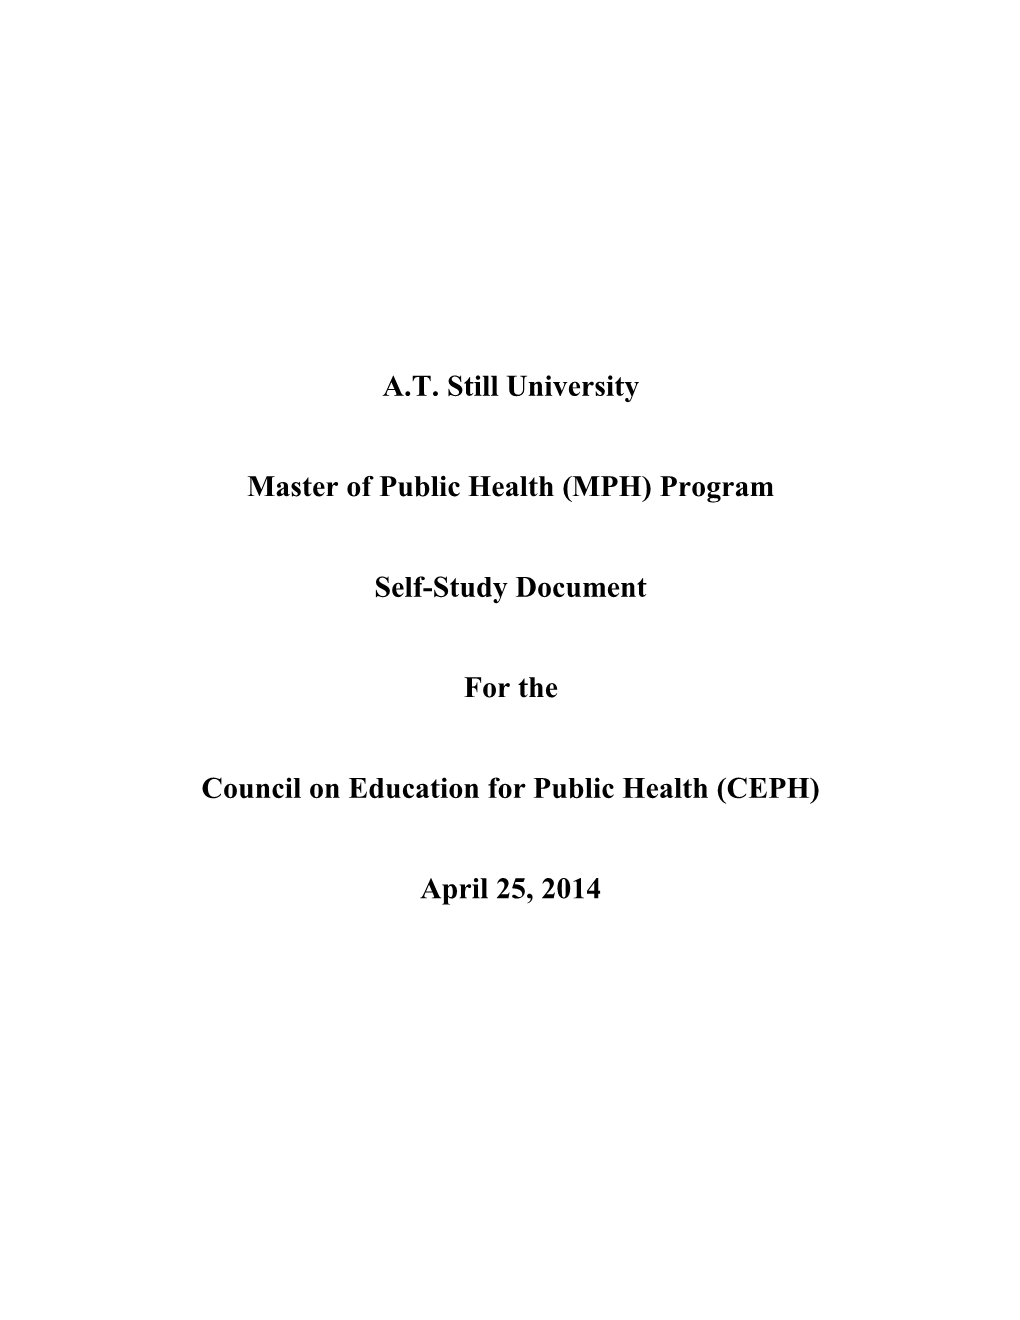 AT Still University Master of Public Health (MPH) Program Self